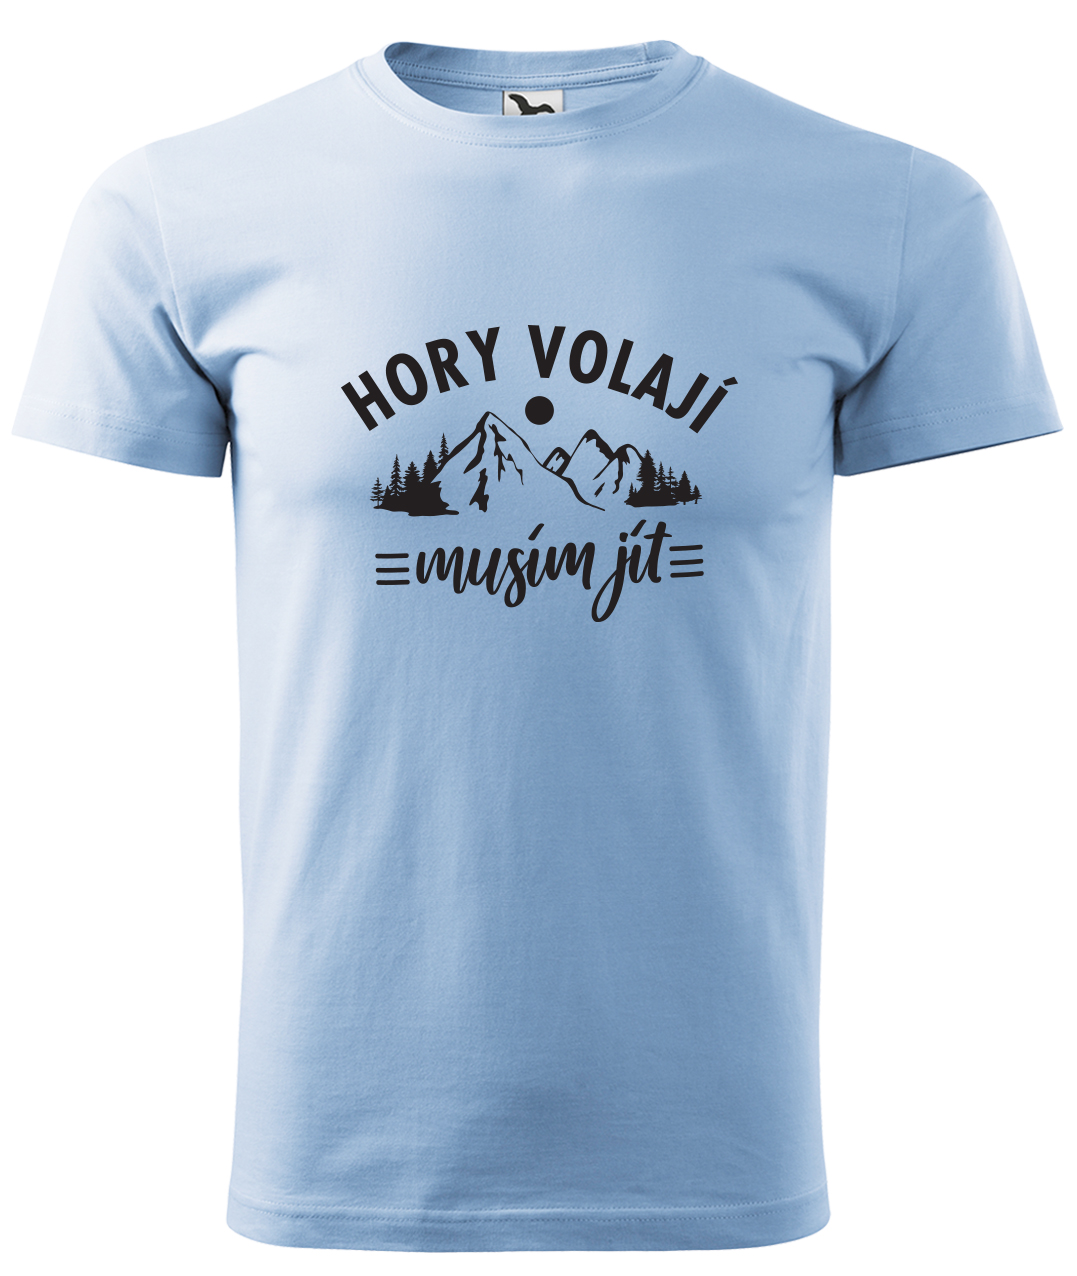 Dětské tričko na hory - Hory volají, musím jít Velikost: 4 roky / 110 cm, Barva: Nebesky modrá (15)